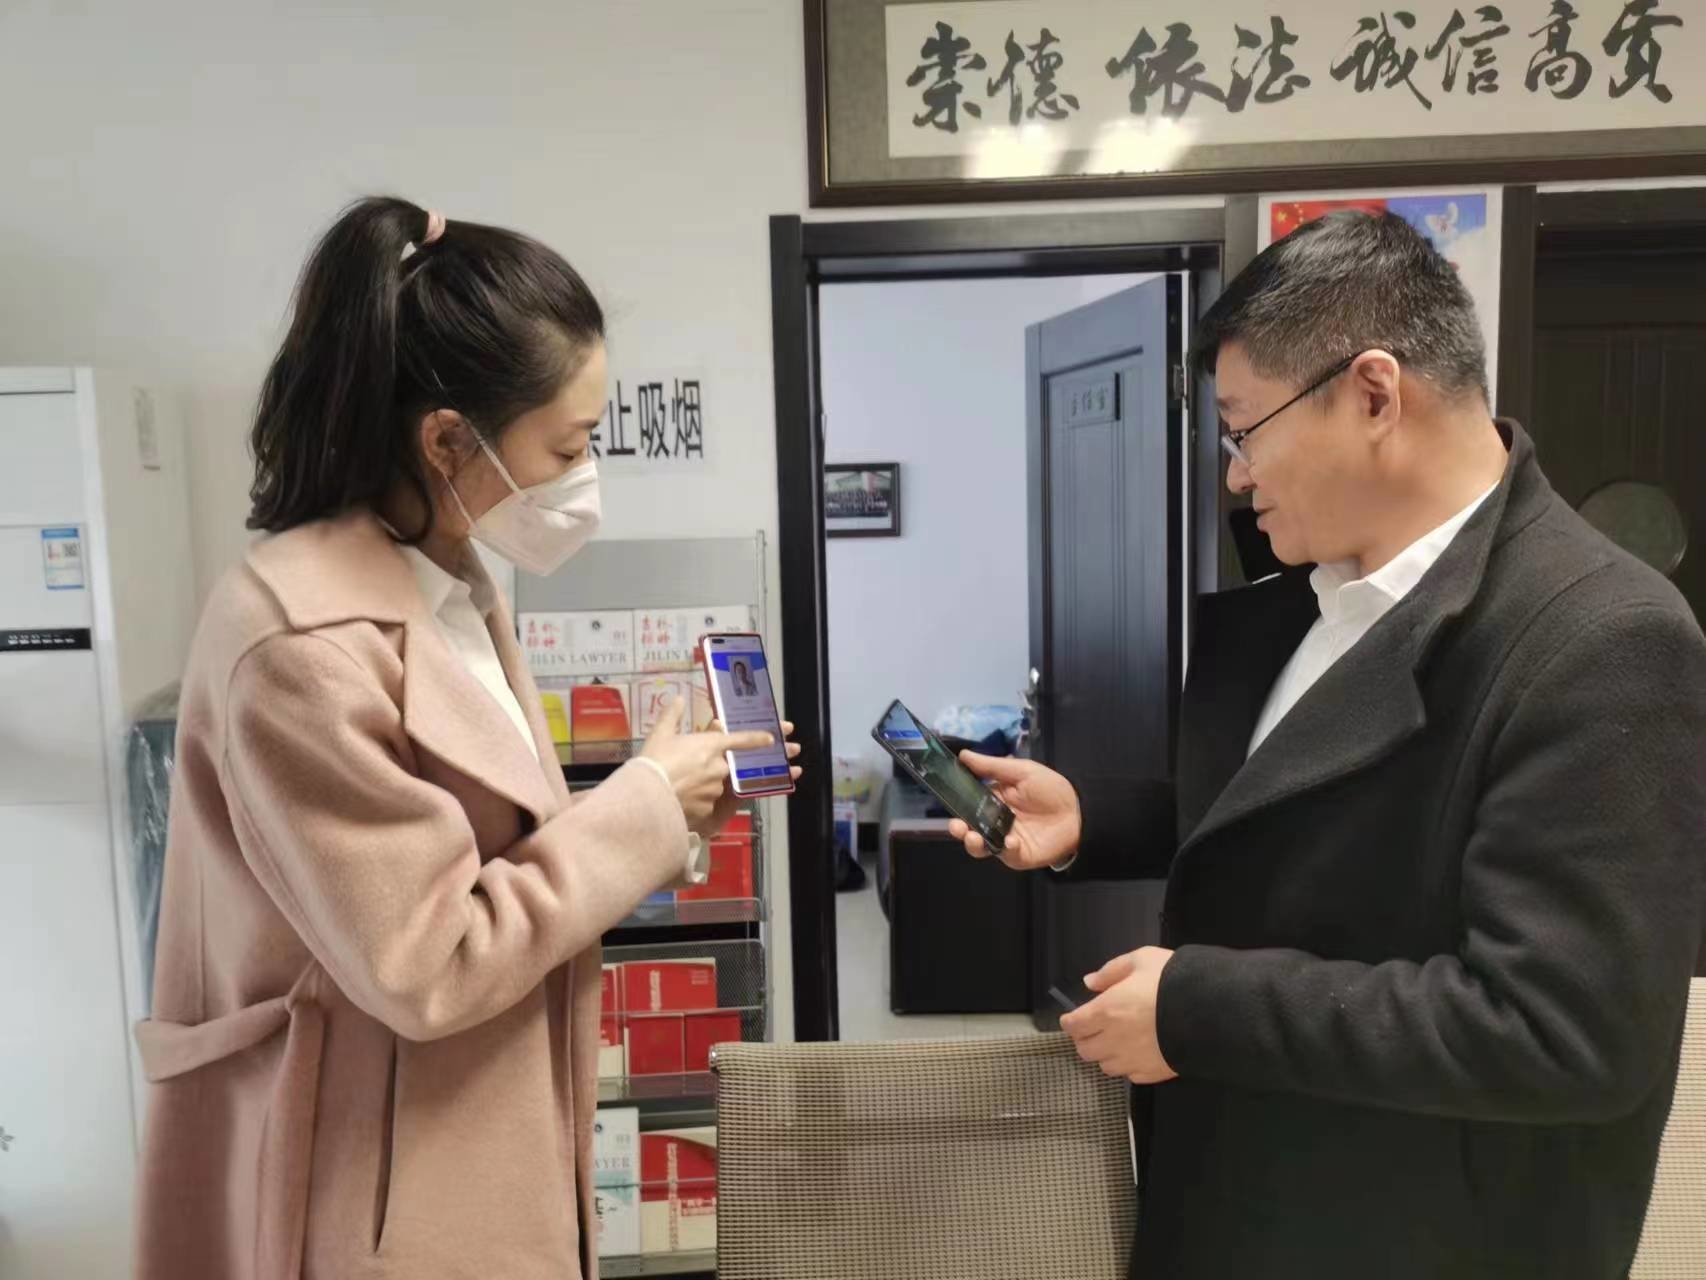 延吉市司法局扎实推进行政检查执法备案智能管理改革